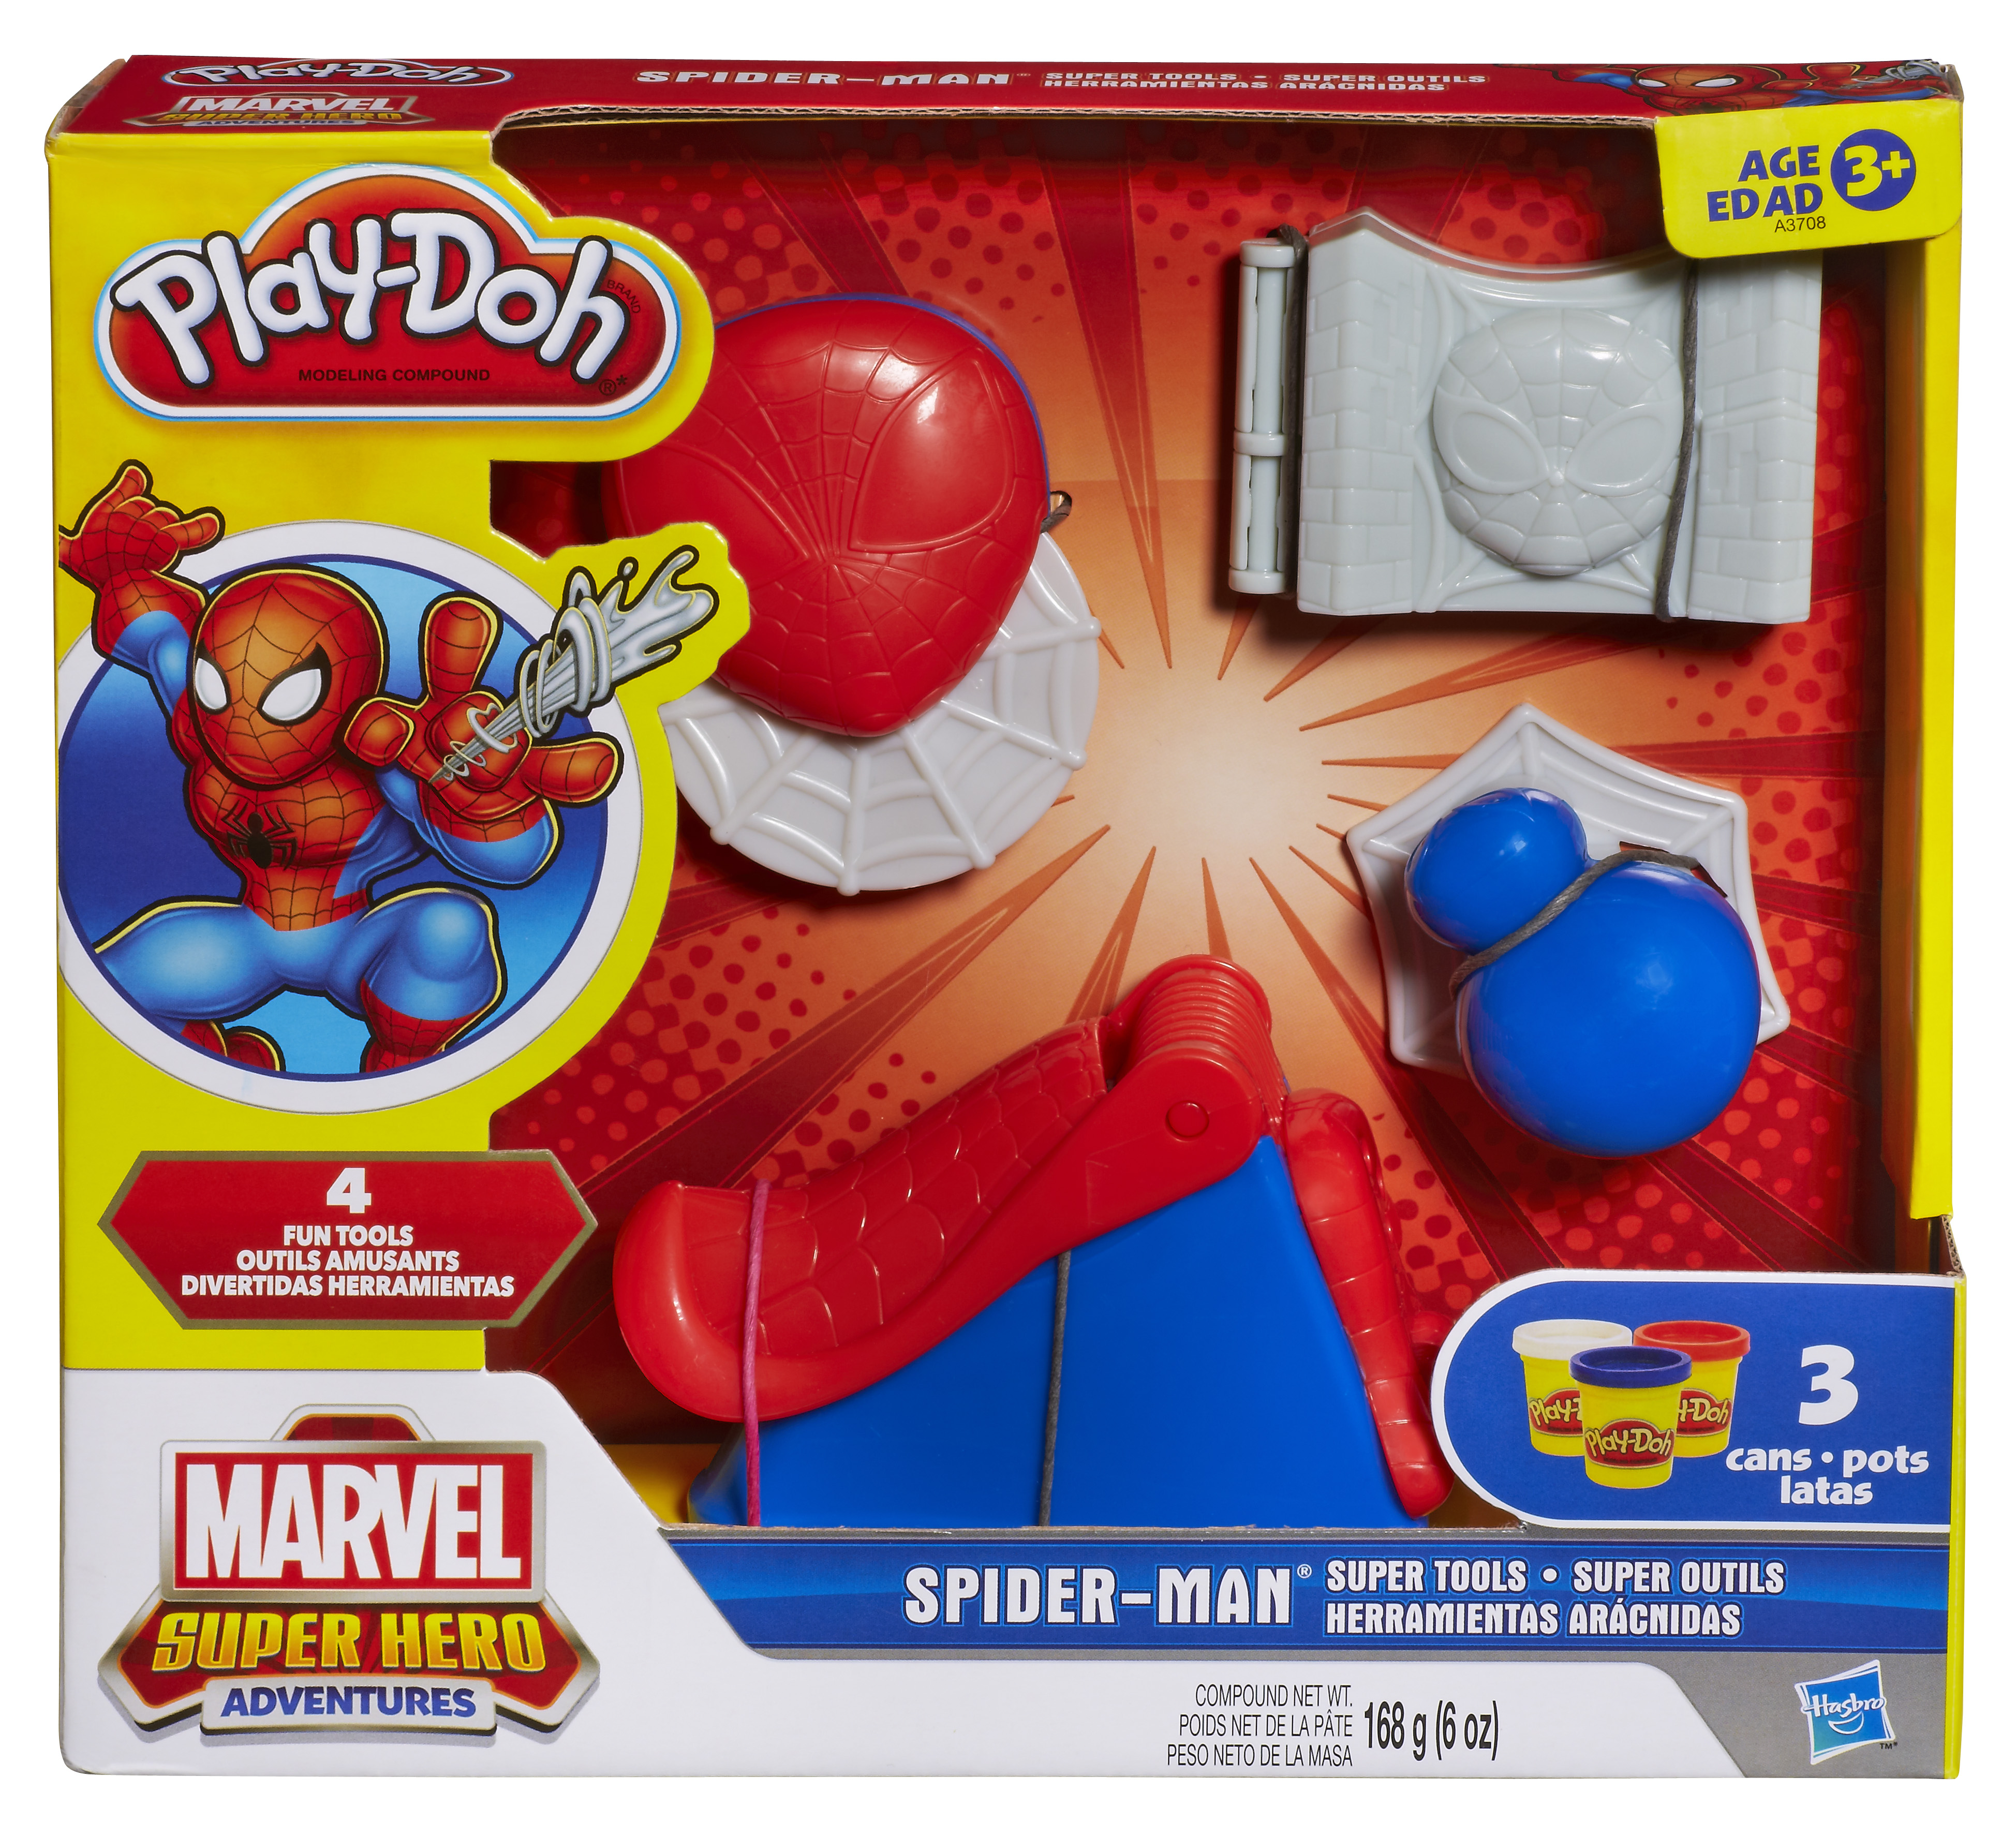 Pâte à modeler Play doh Can heads Spiderman Bouffon Vert Iron Man